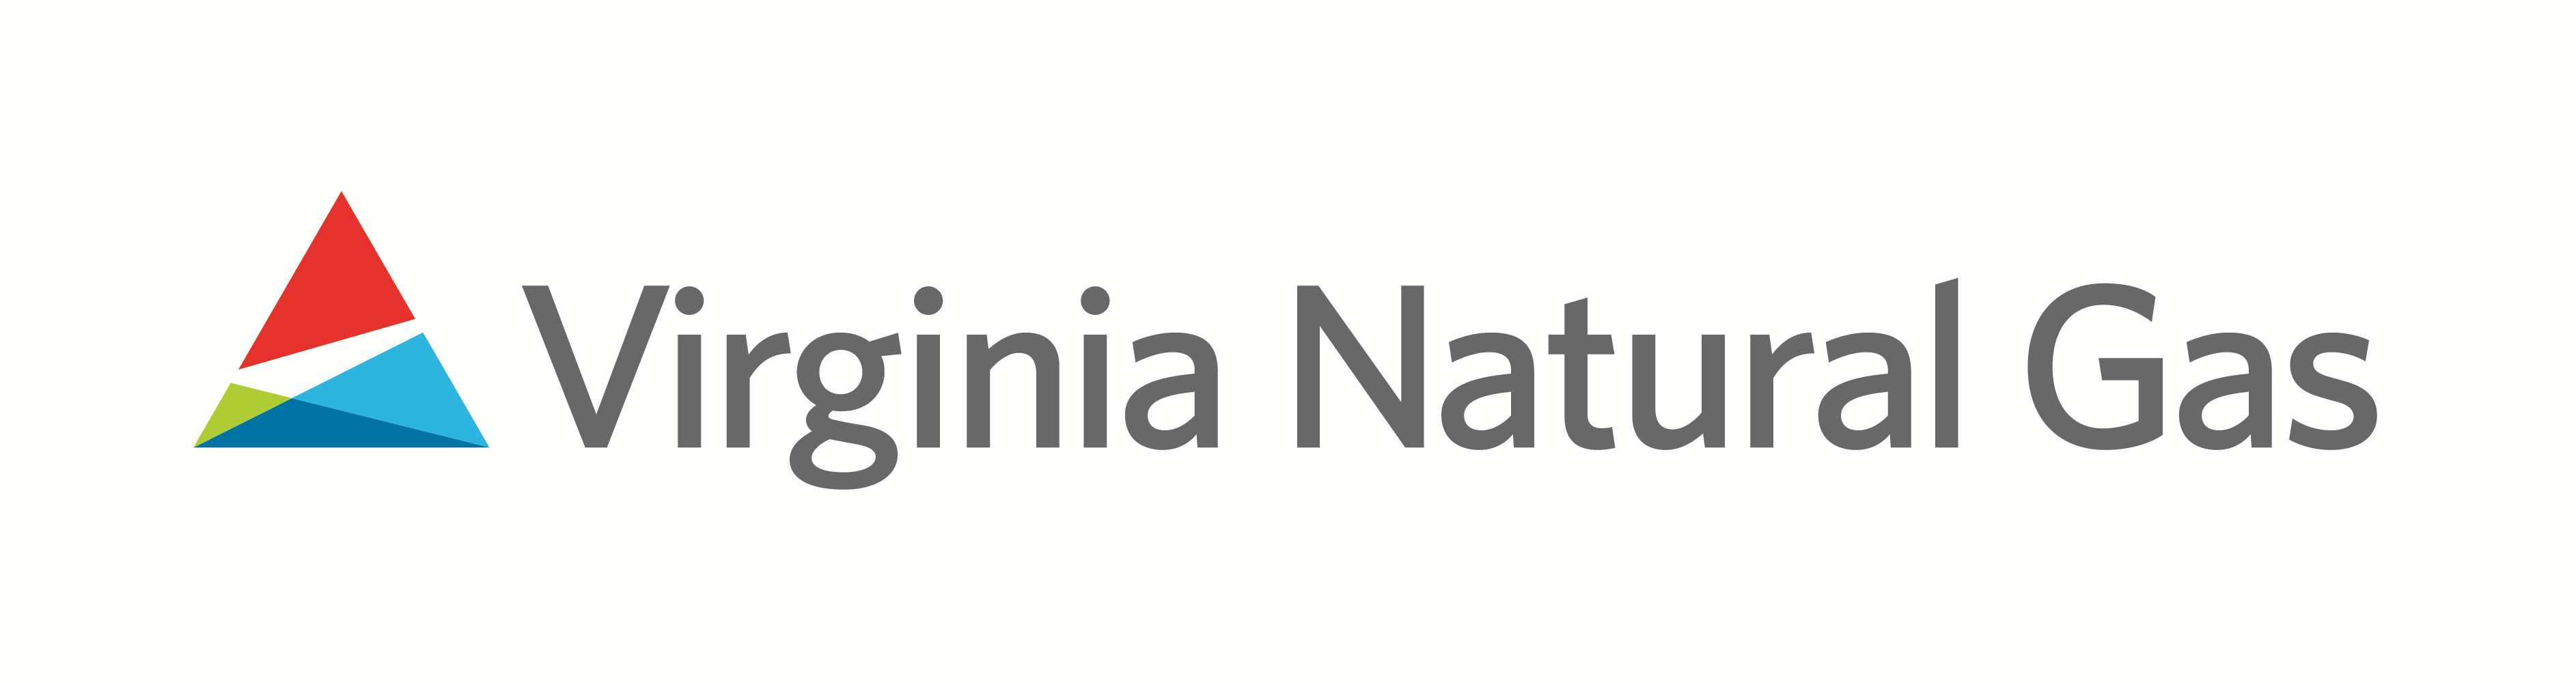 Virginia Natural Gas Company Logo